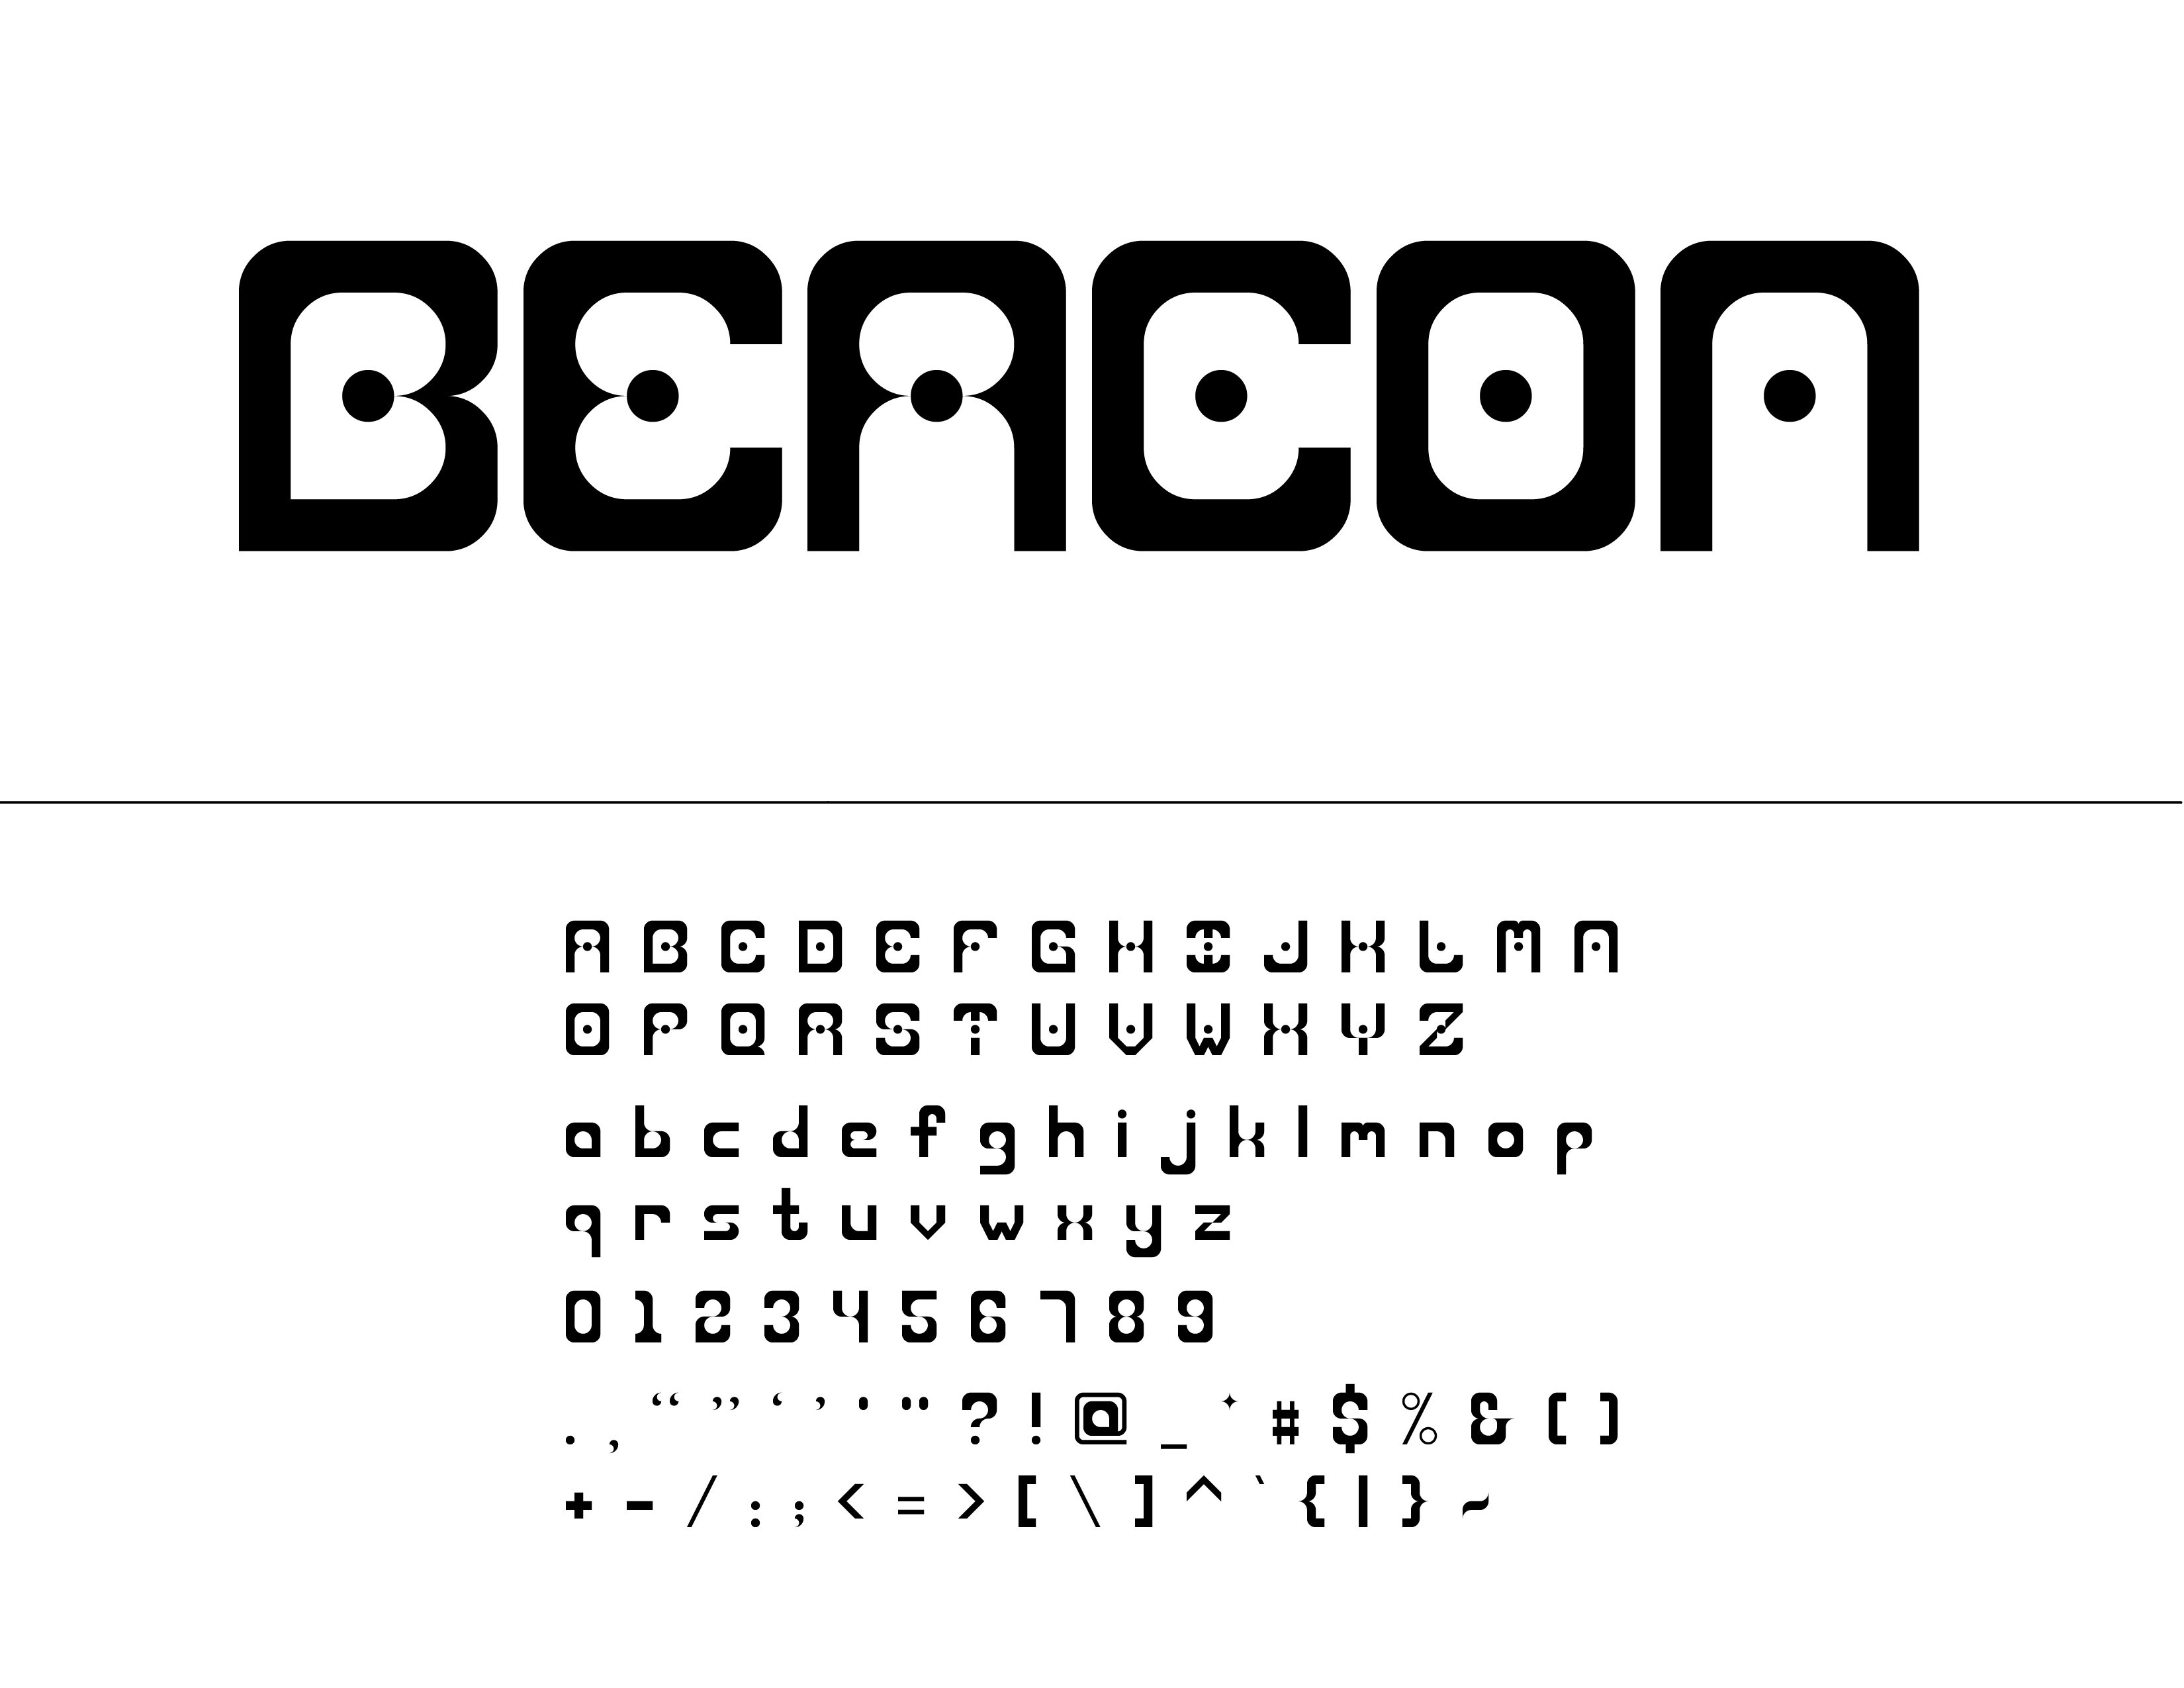 Beacon typeface